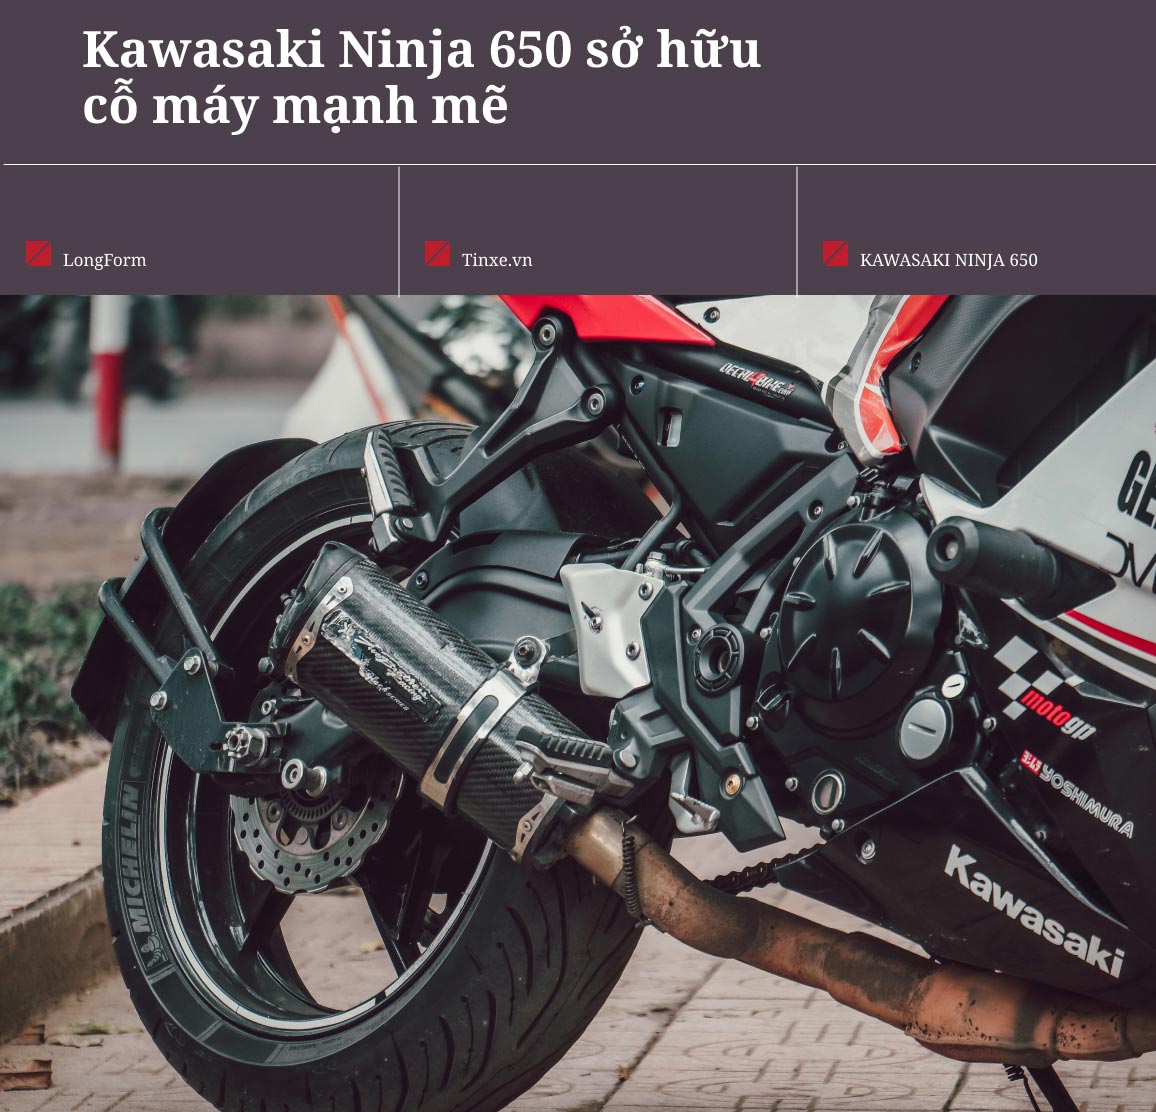 Động cơ xe Kawasaki Ninja 650 đủ làm hài lòng những người mê tốc độ